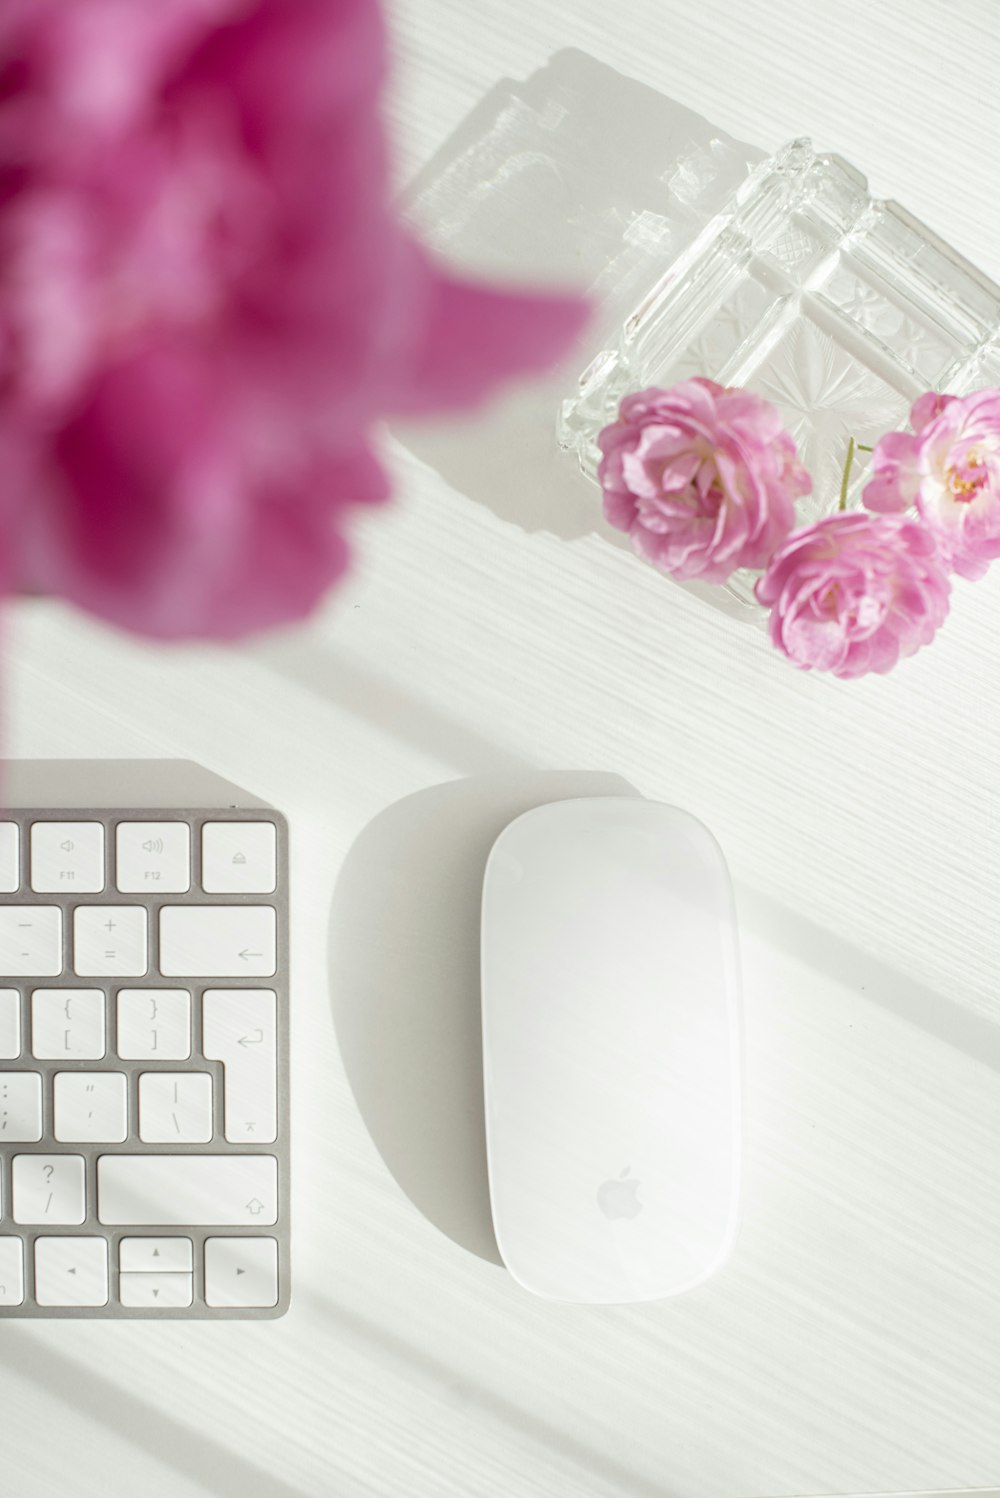 rato mágico branco da maçã ao lado da flor cor-de-rosa na mesa de madeira branca